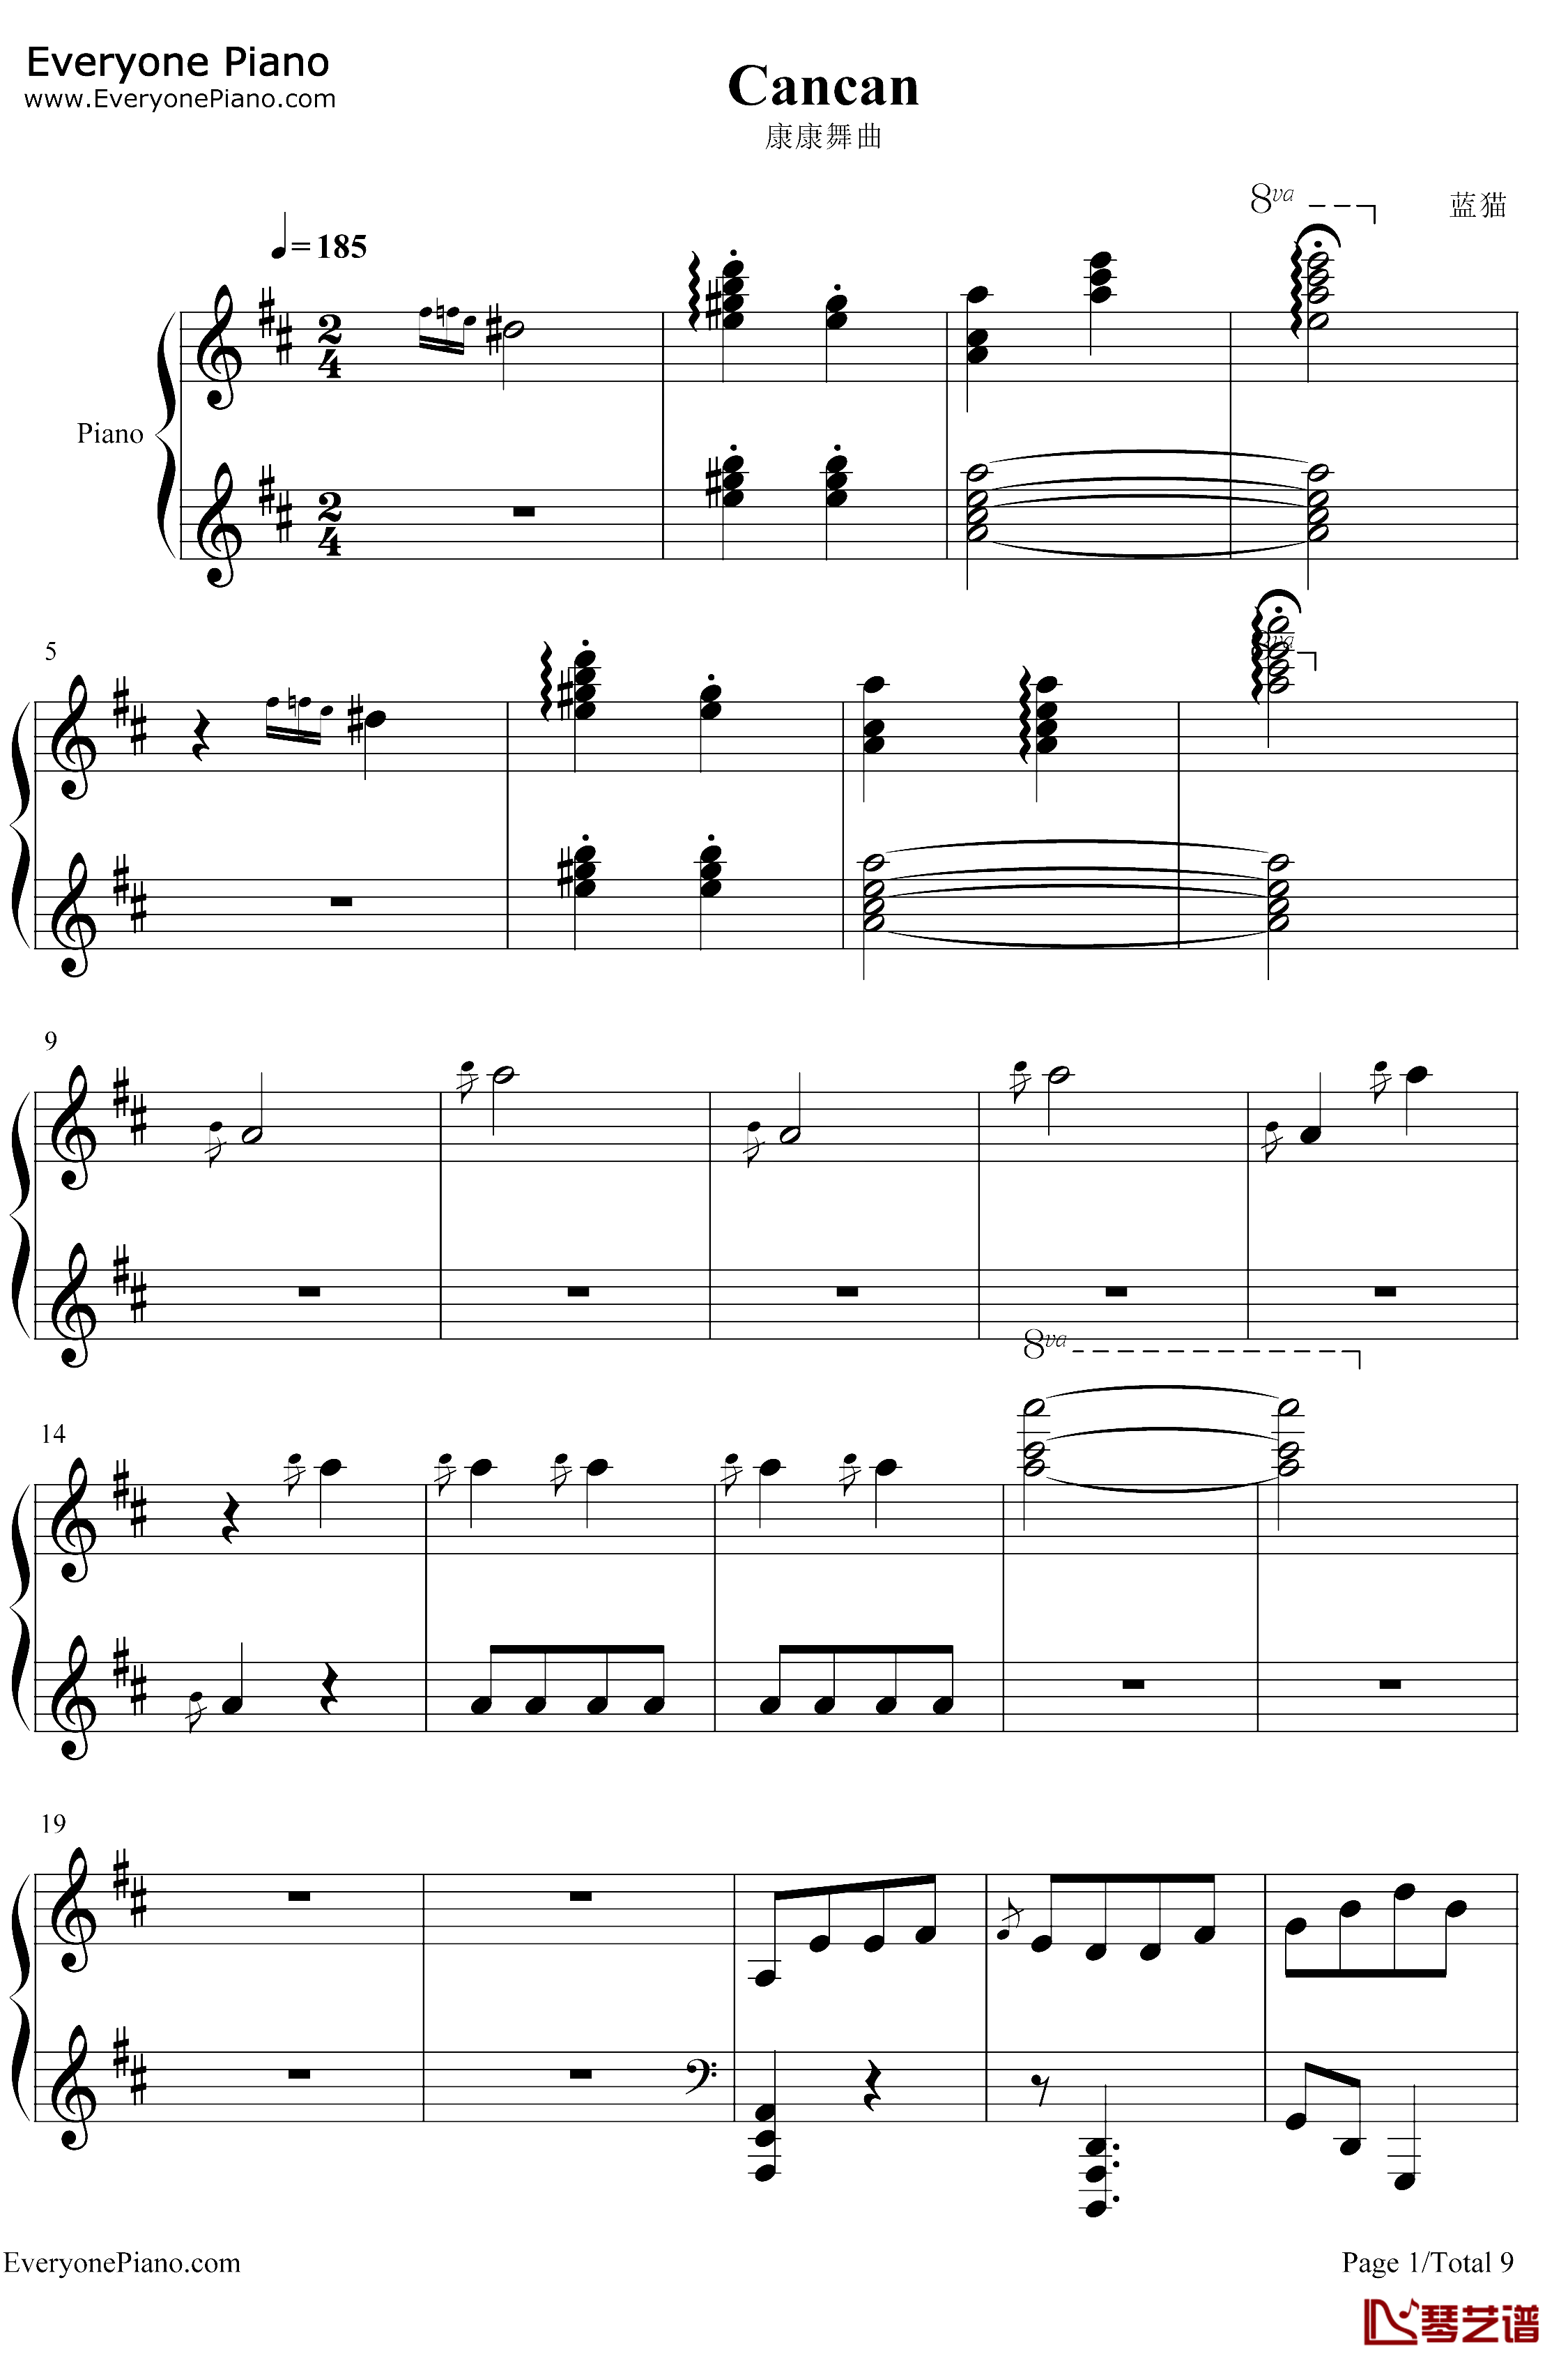 康康舞曲钢琴谱-雅克·奥芬巴赫-触手猴版-天堂与地狱序曲-地狱中的奥菲欧序曲1